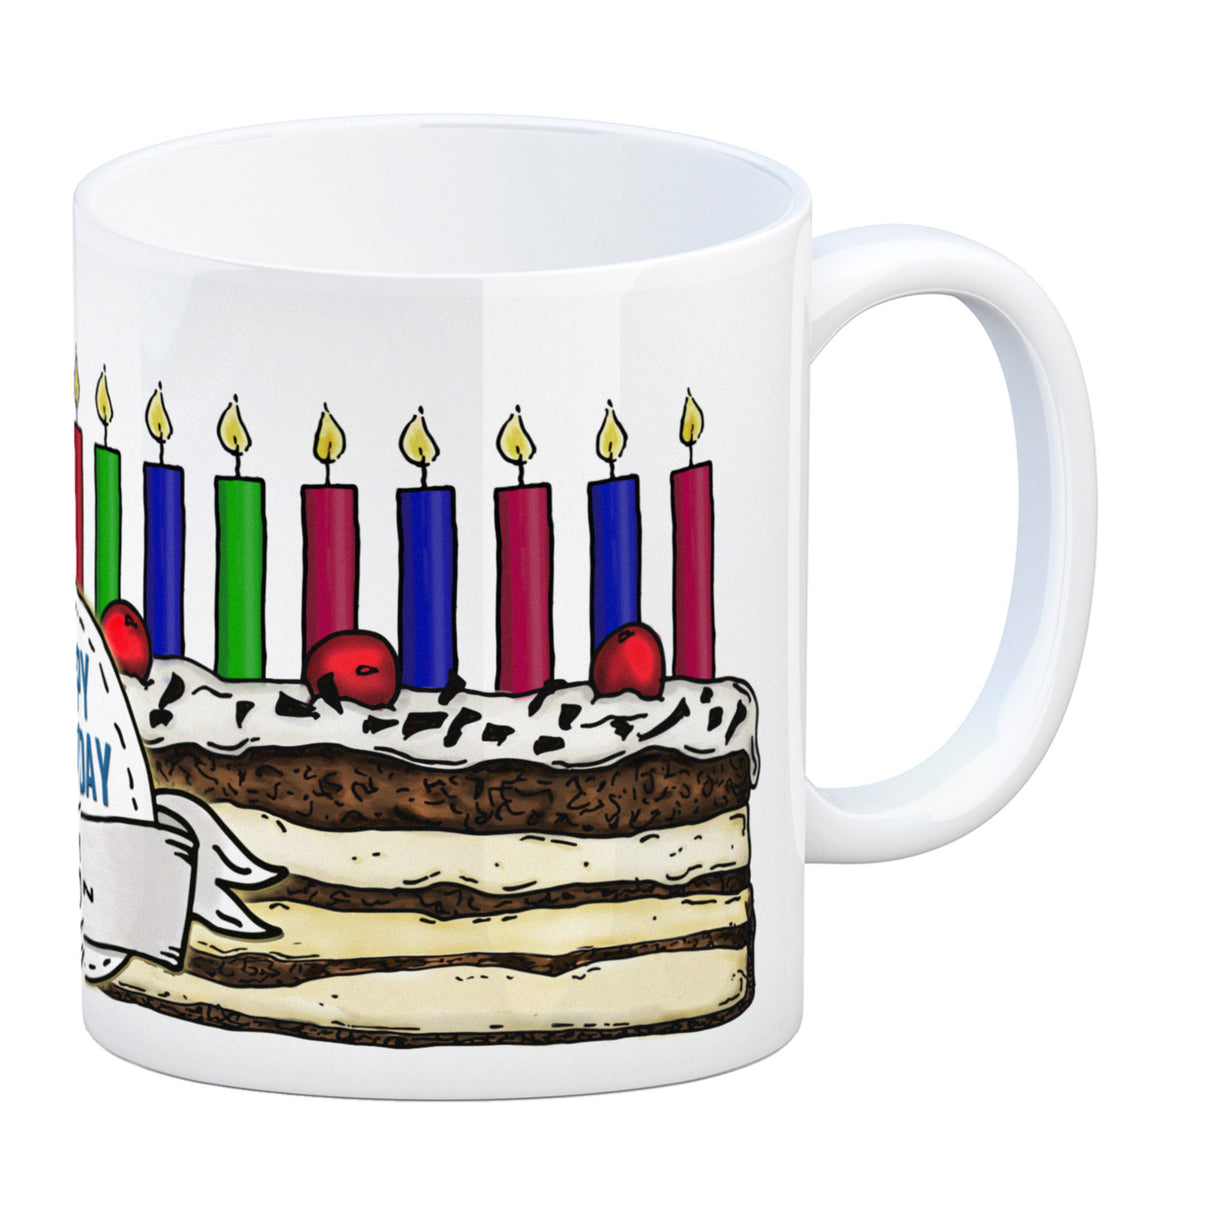 Geburtstagstorte Kaffeebecher zum 18. Geburtstag mit 18 Kerzen